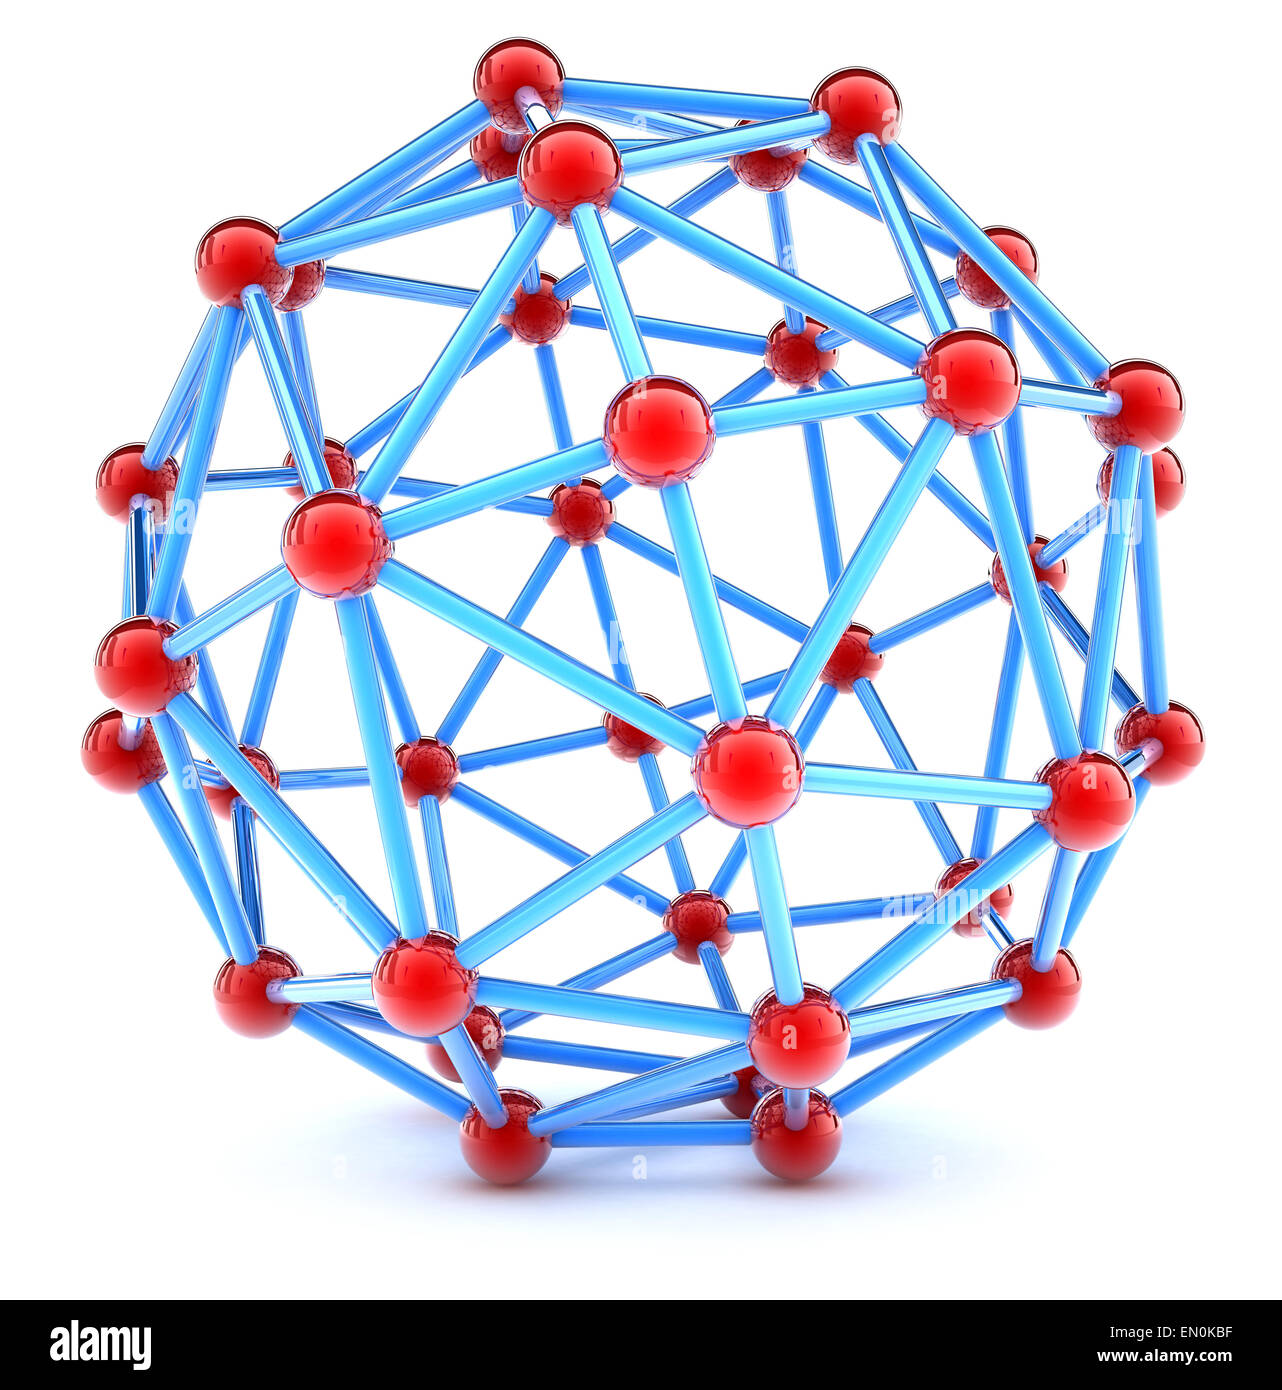 Molecular spherical lattice Stock Photo